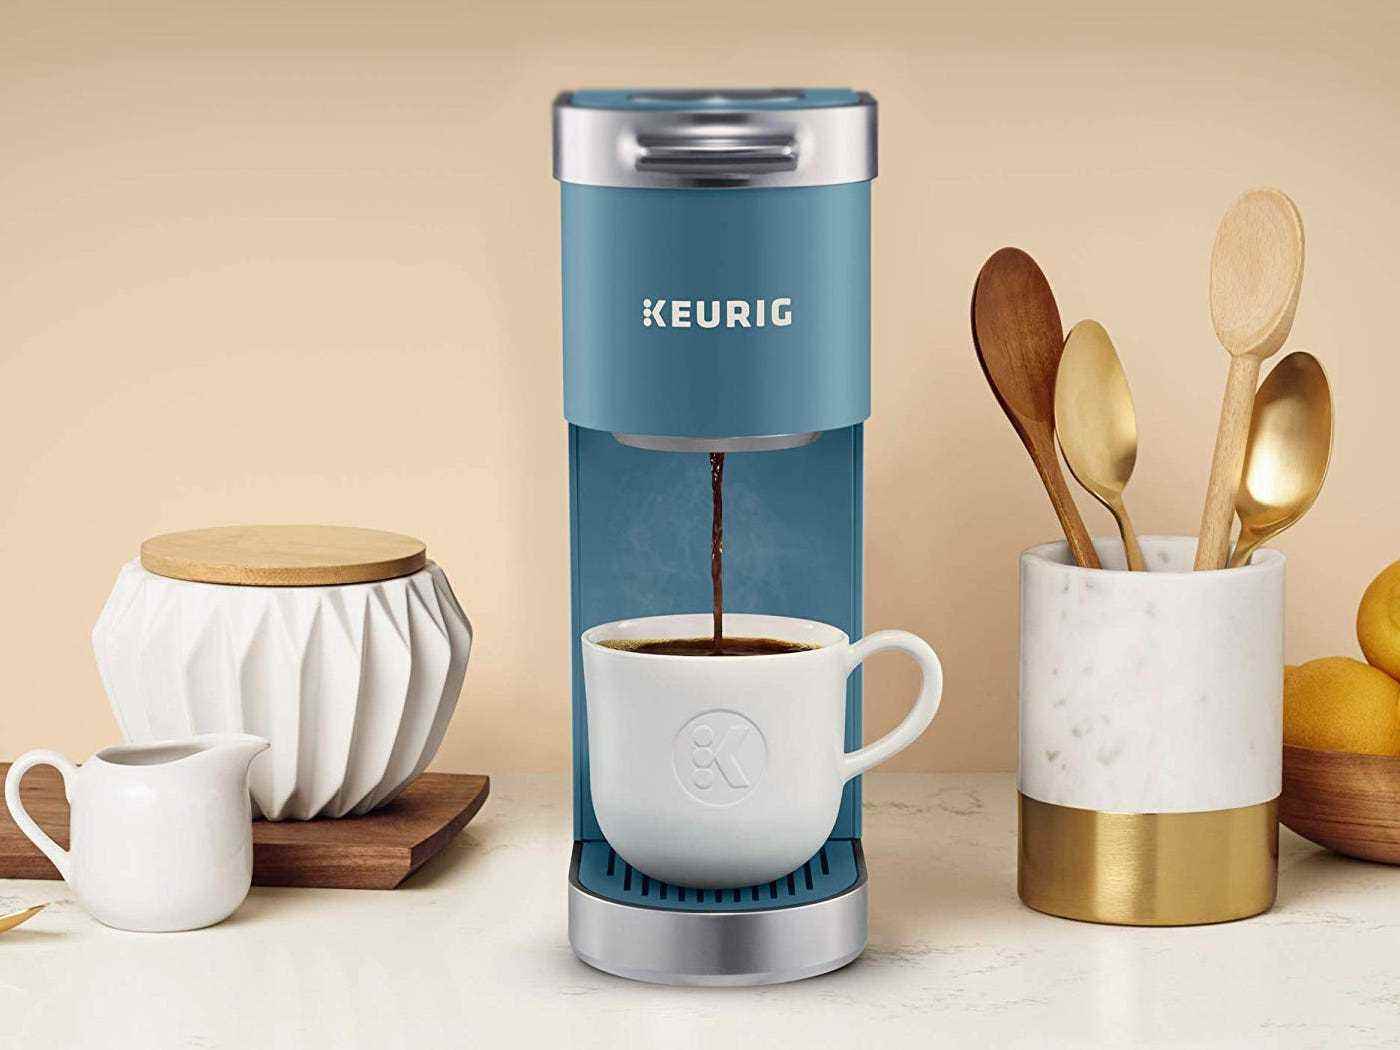 Die Keurig K-Mini Single Serve Kaffeemaschine in Blau gießt Kaffee in eine Tasse und steht neben einem Utensilienhalter.